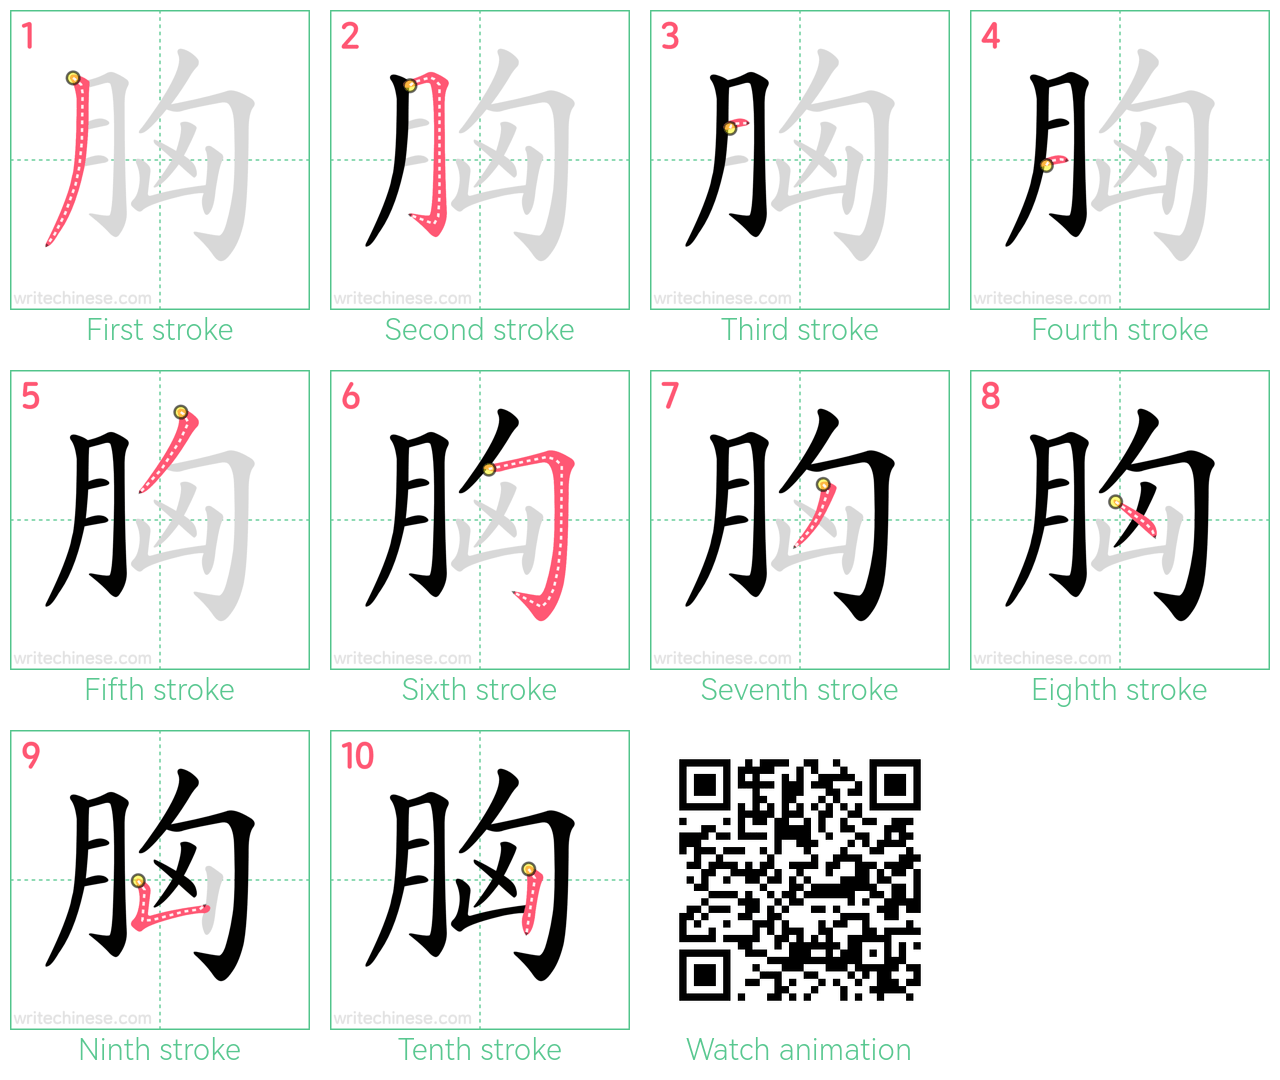 胸 step-by-step stroke order diagrams